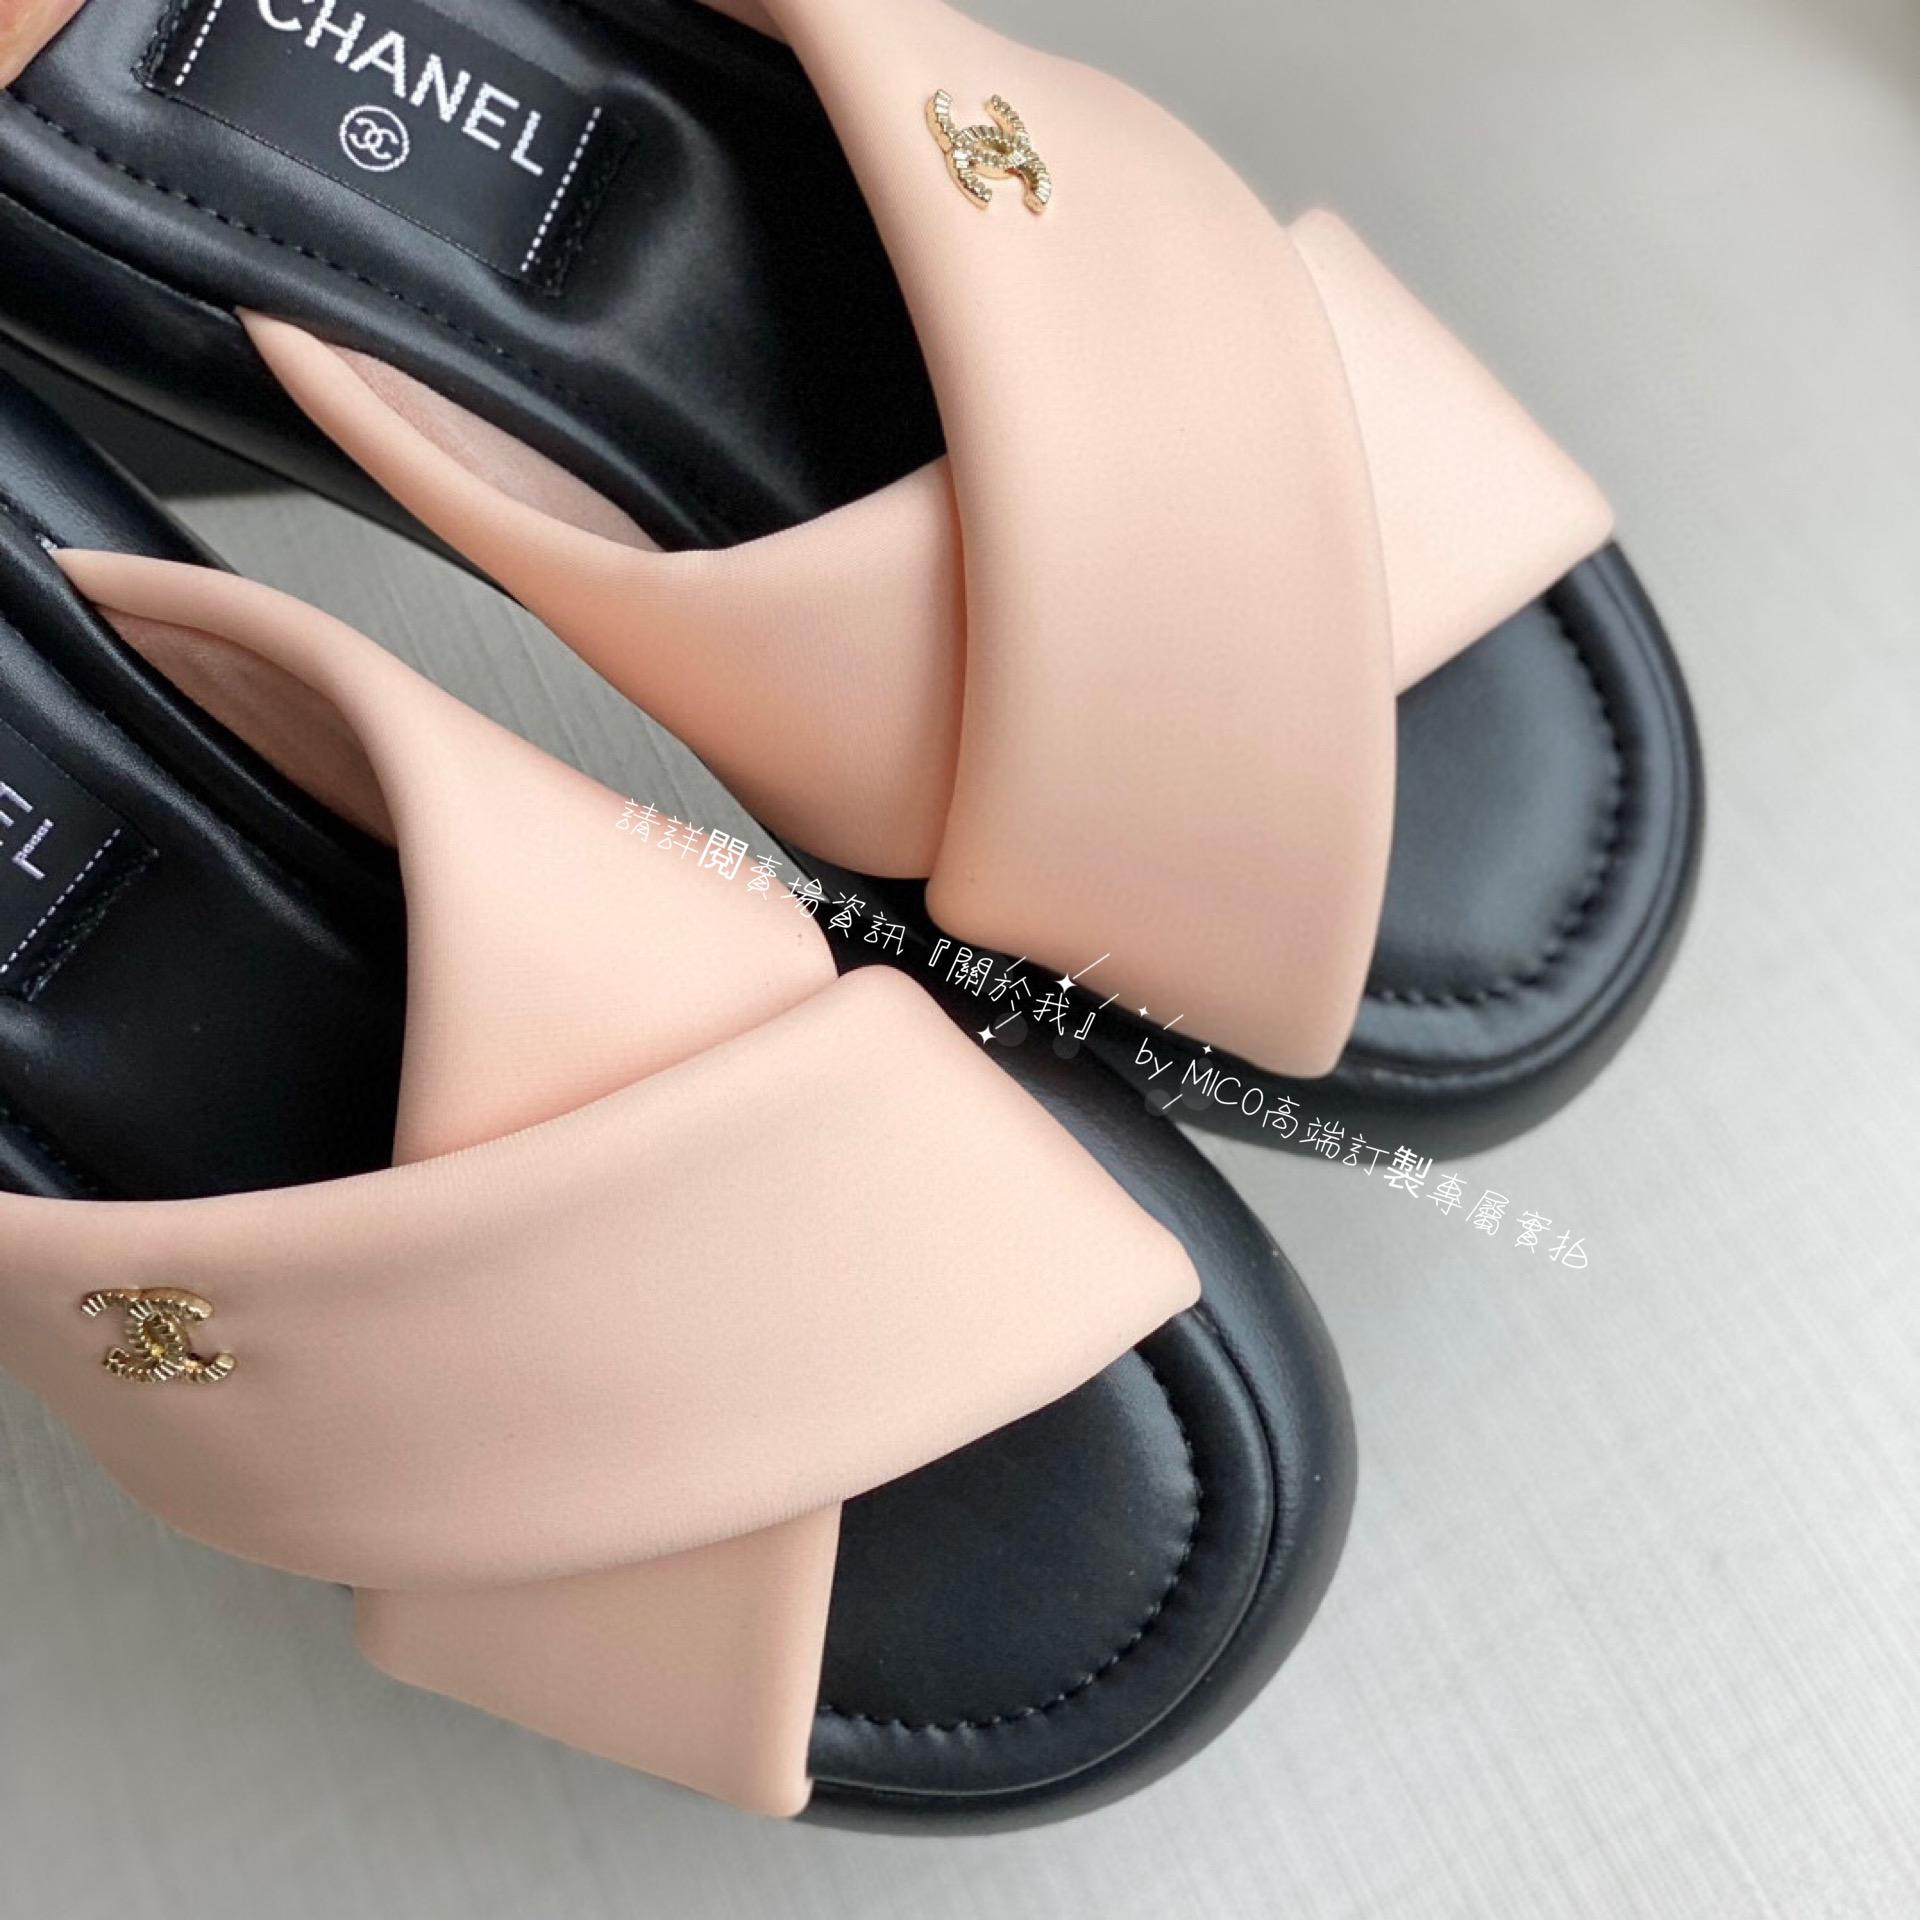 Chanel 香奈兒 夏季新款 交叉拖鞋/麵包涼拖鞋 沙灘涼鞋 35-40